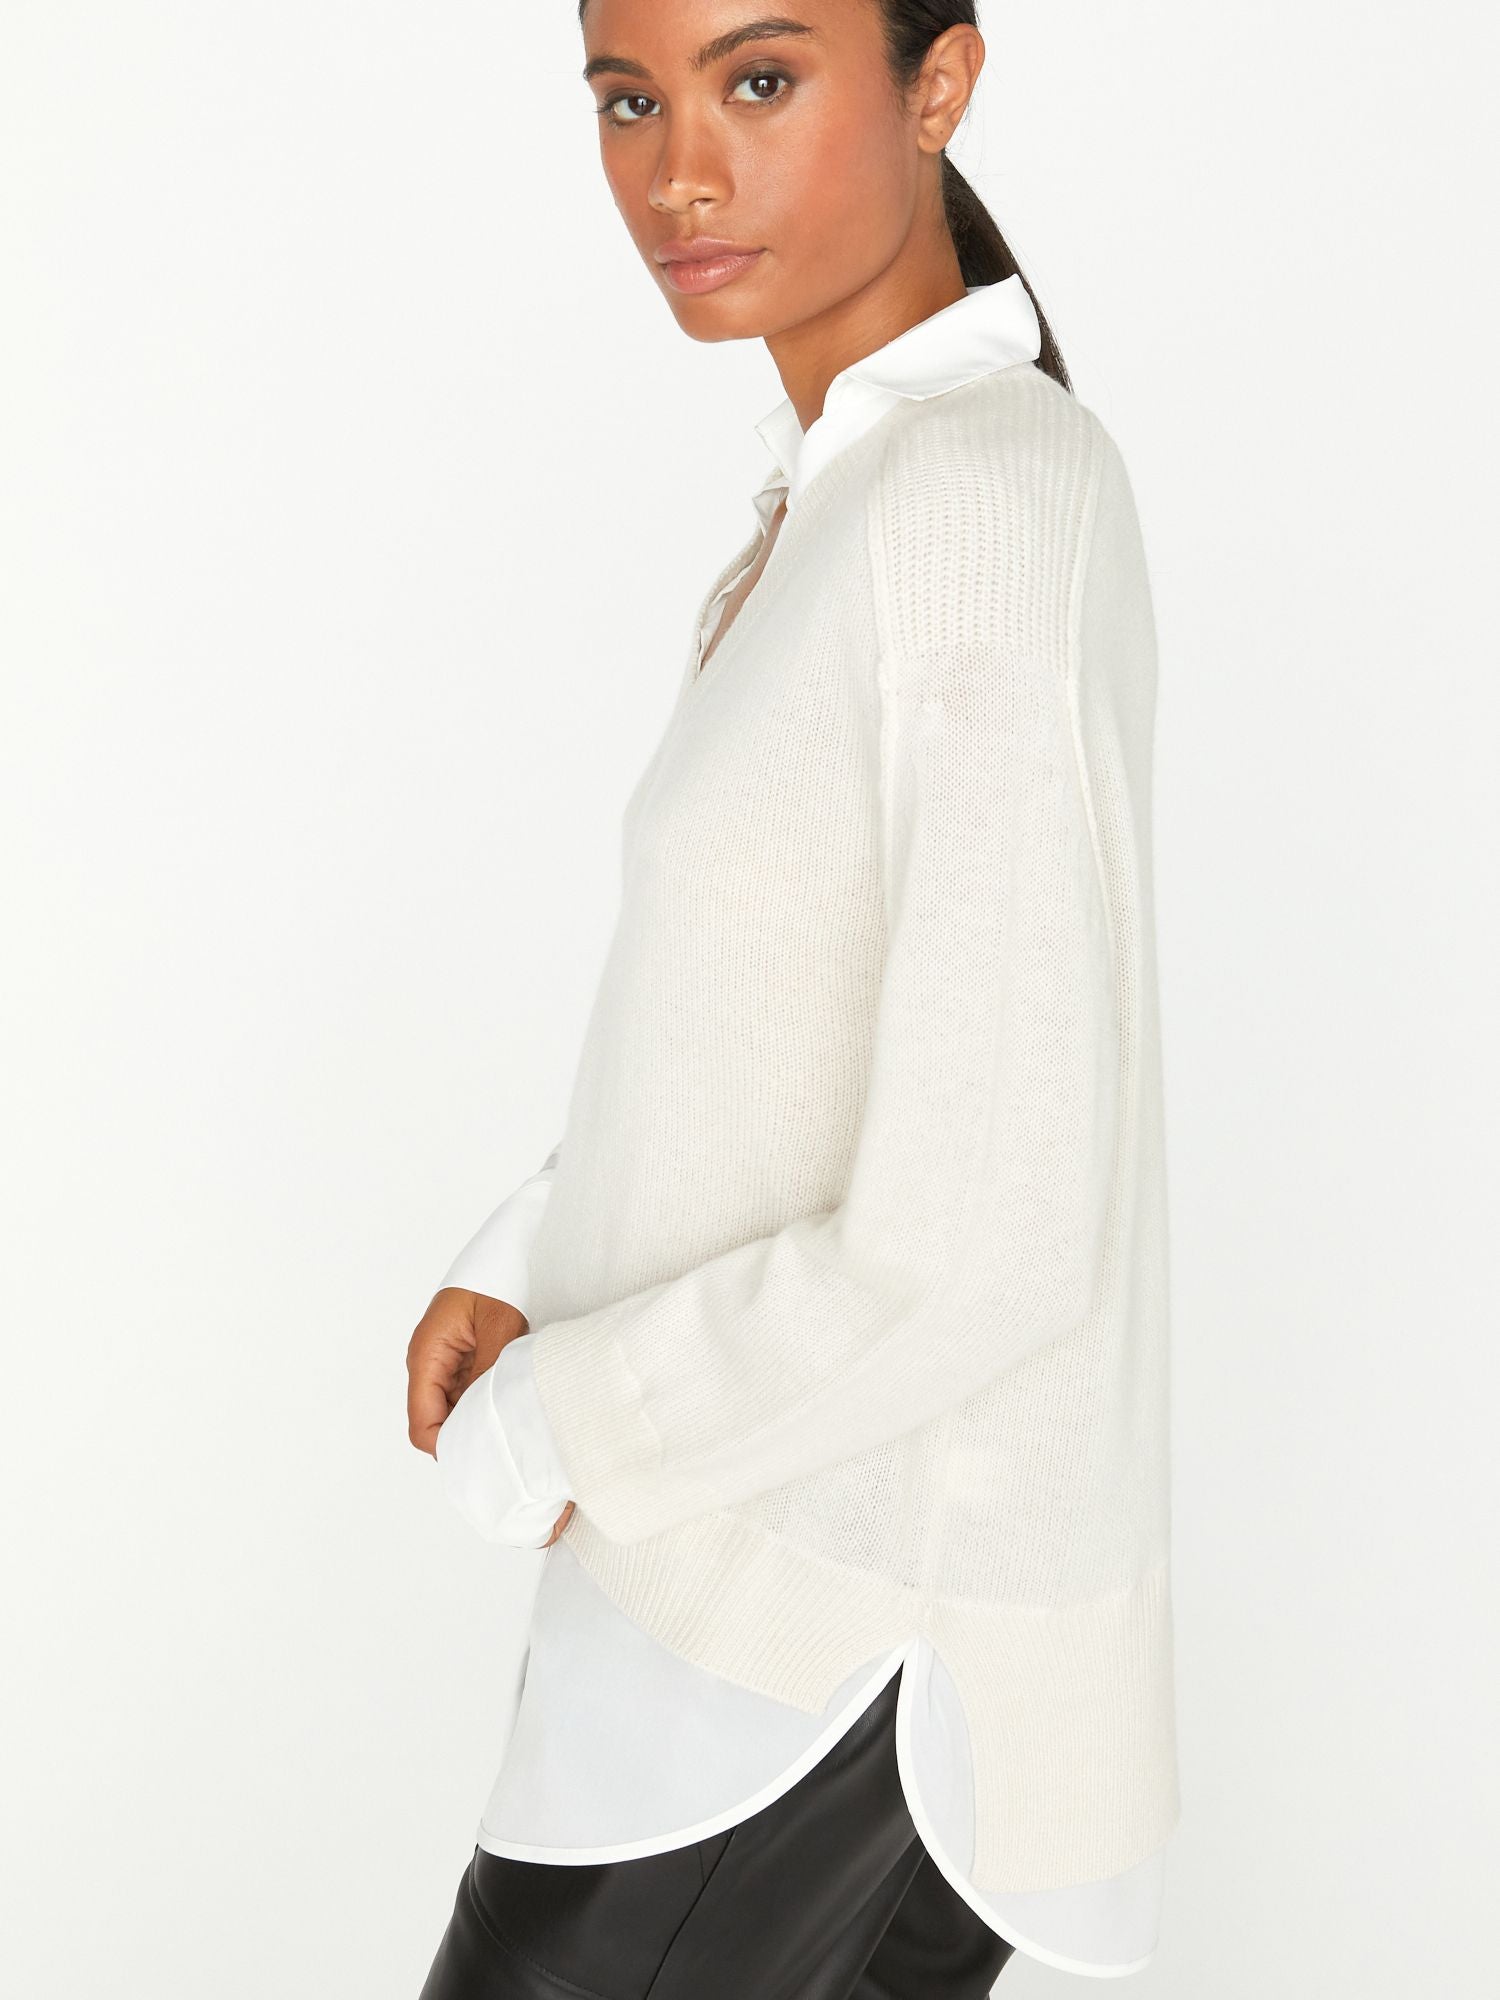 Brochu Walker Women's Layered V-neck Looker Sweater in Tan